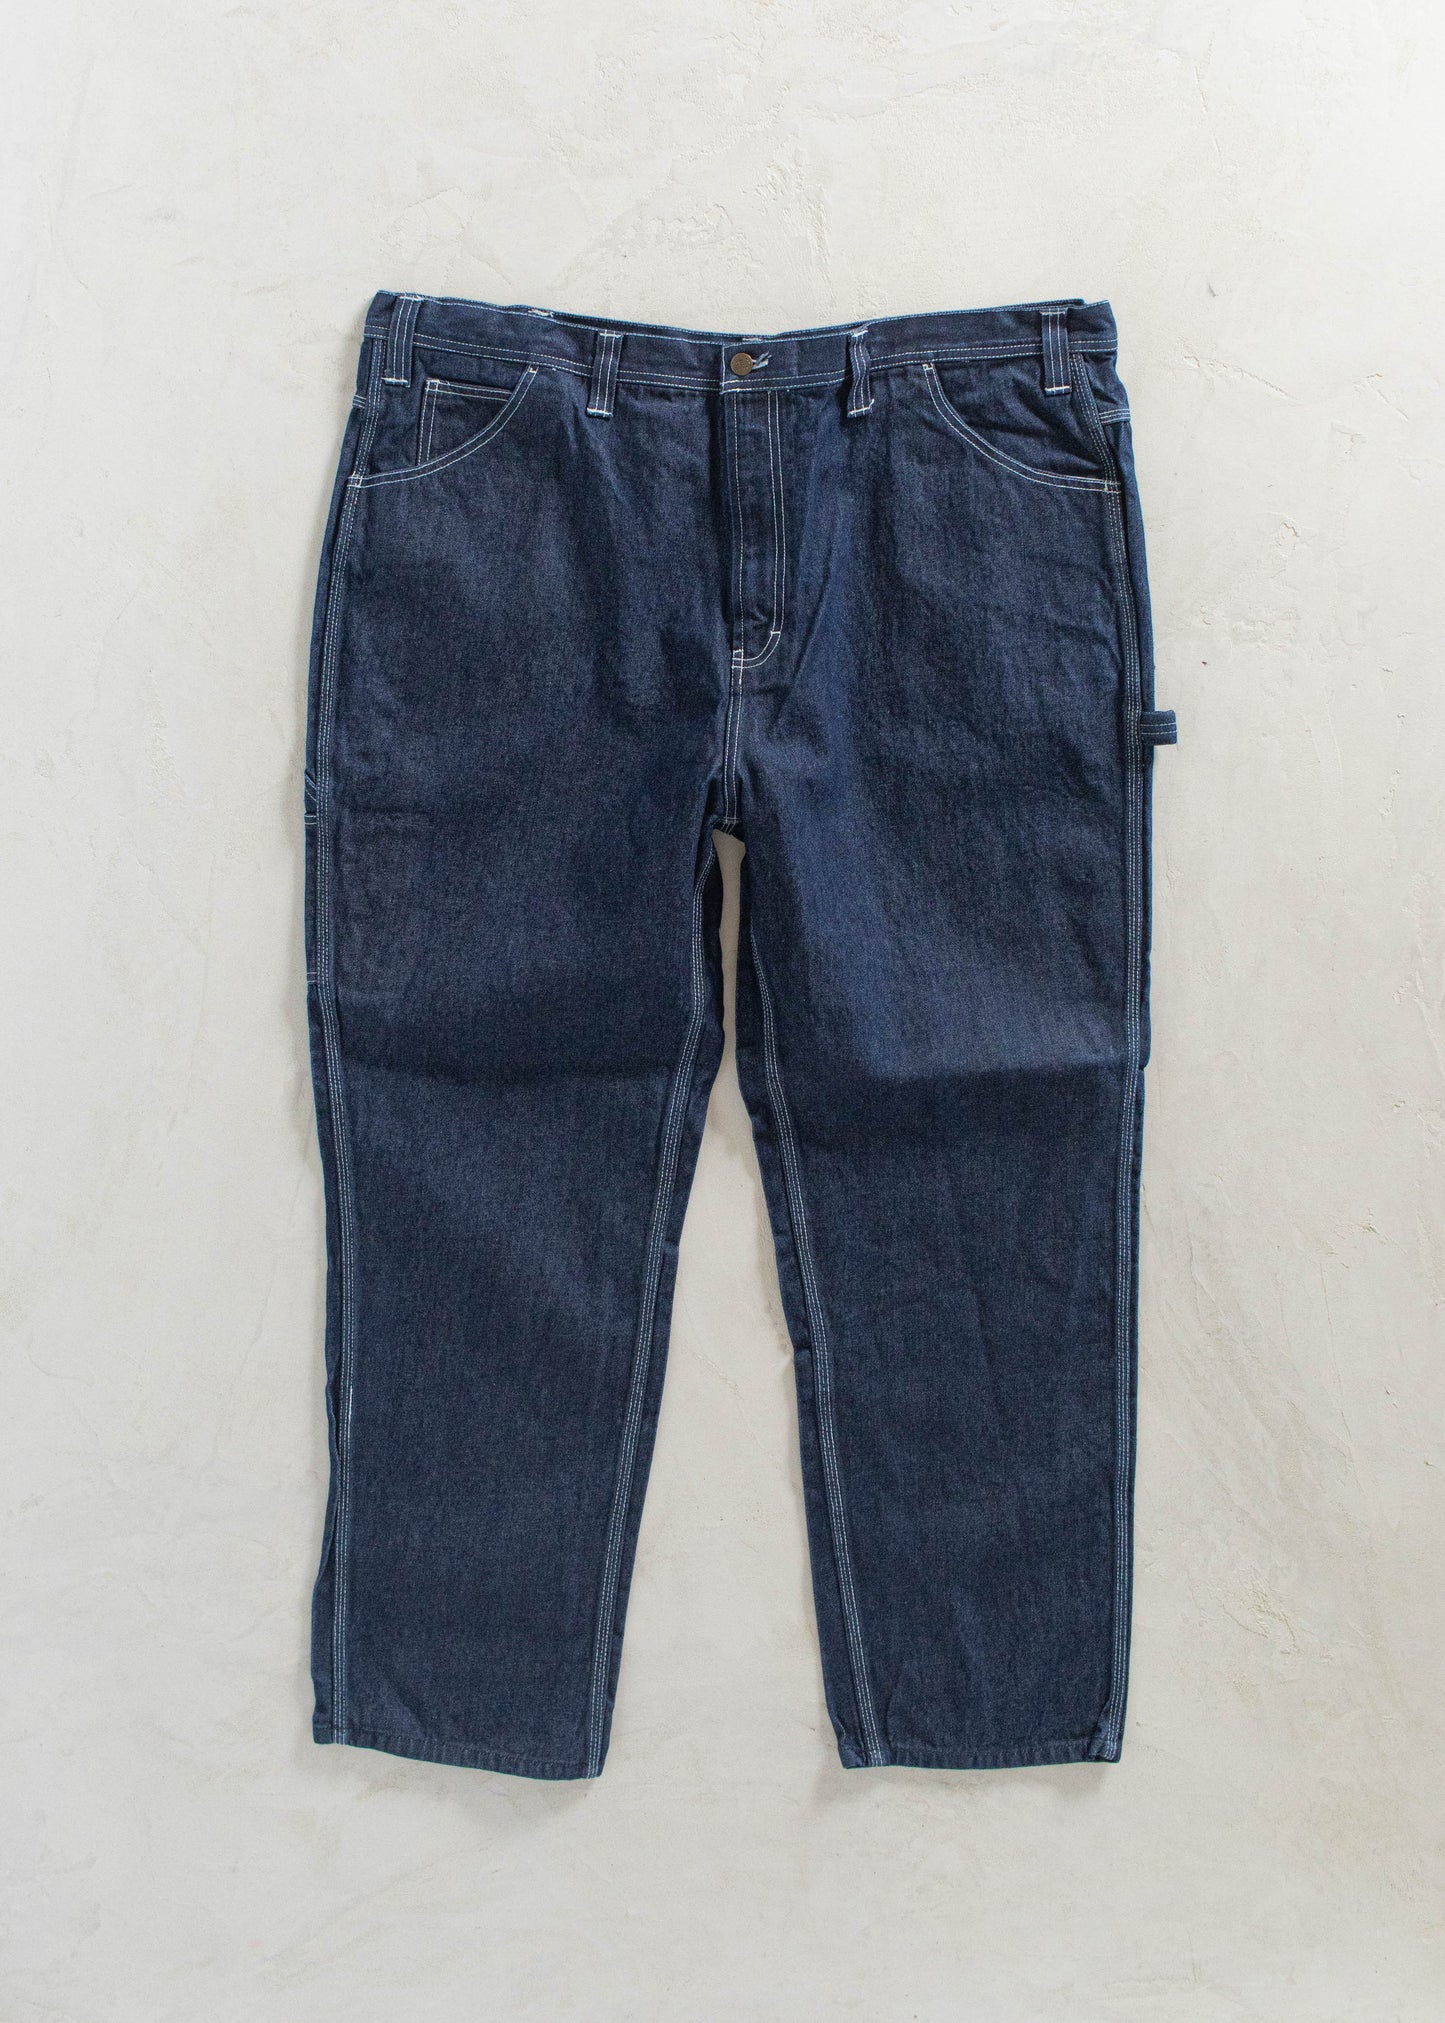 1980s USA Works Deadstock Denim Carpenter Pants Size Women's 42 Men's 44